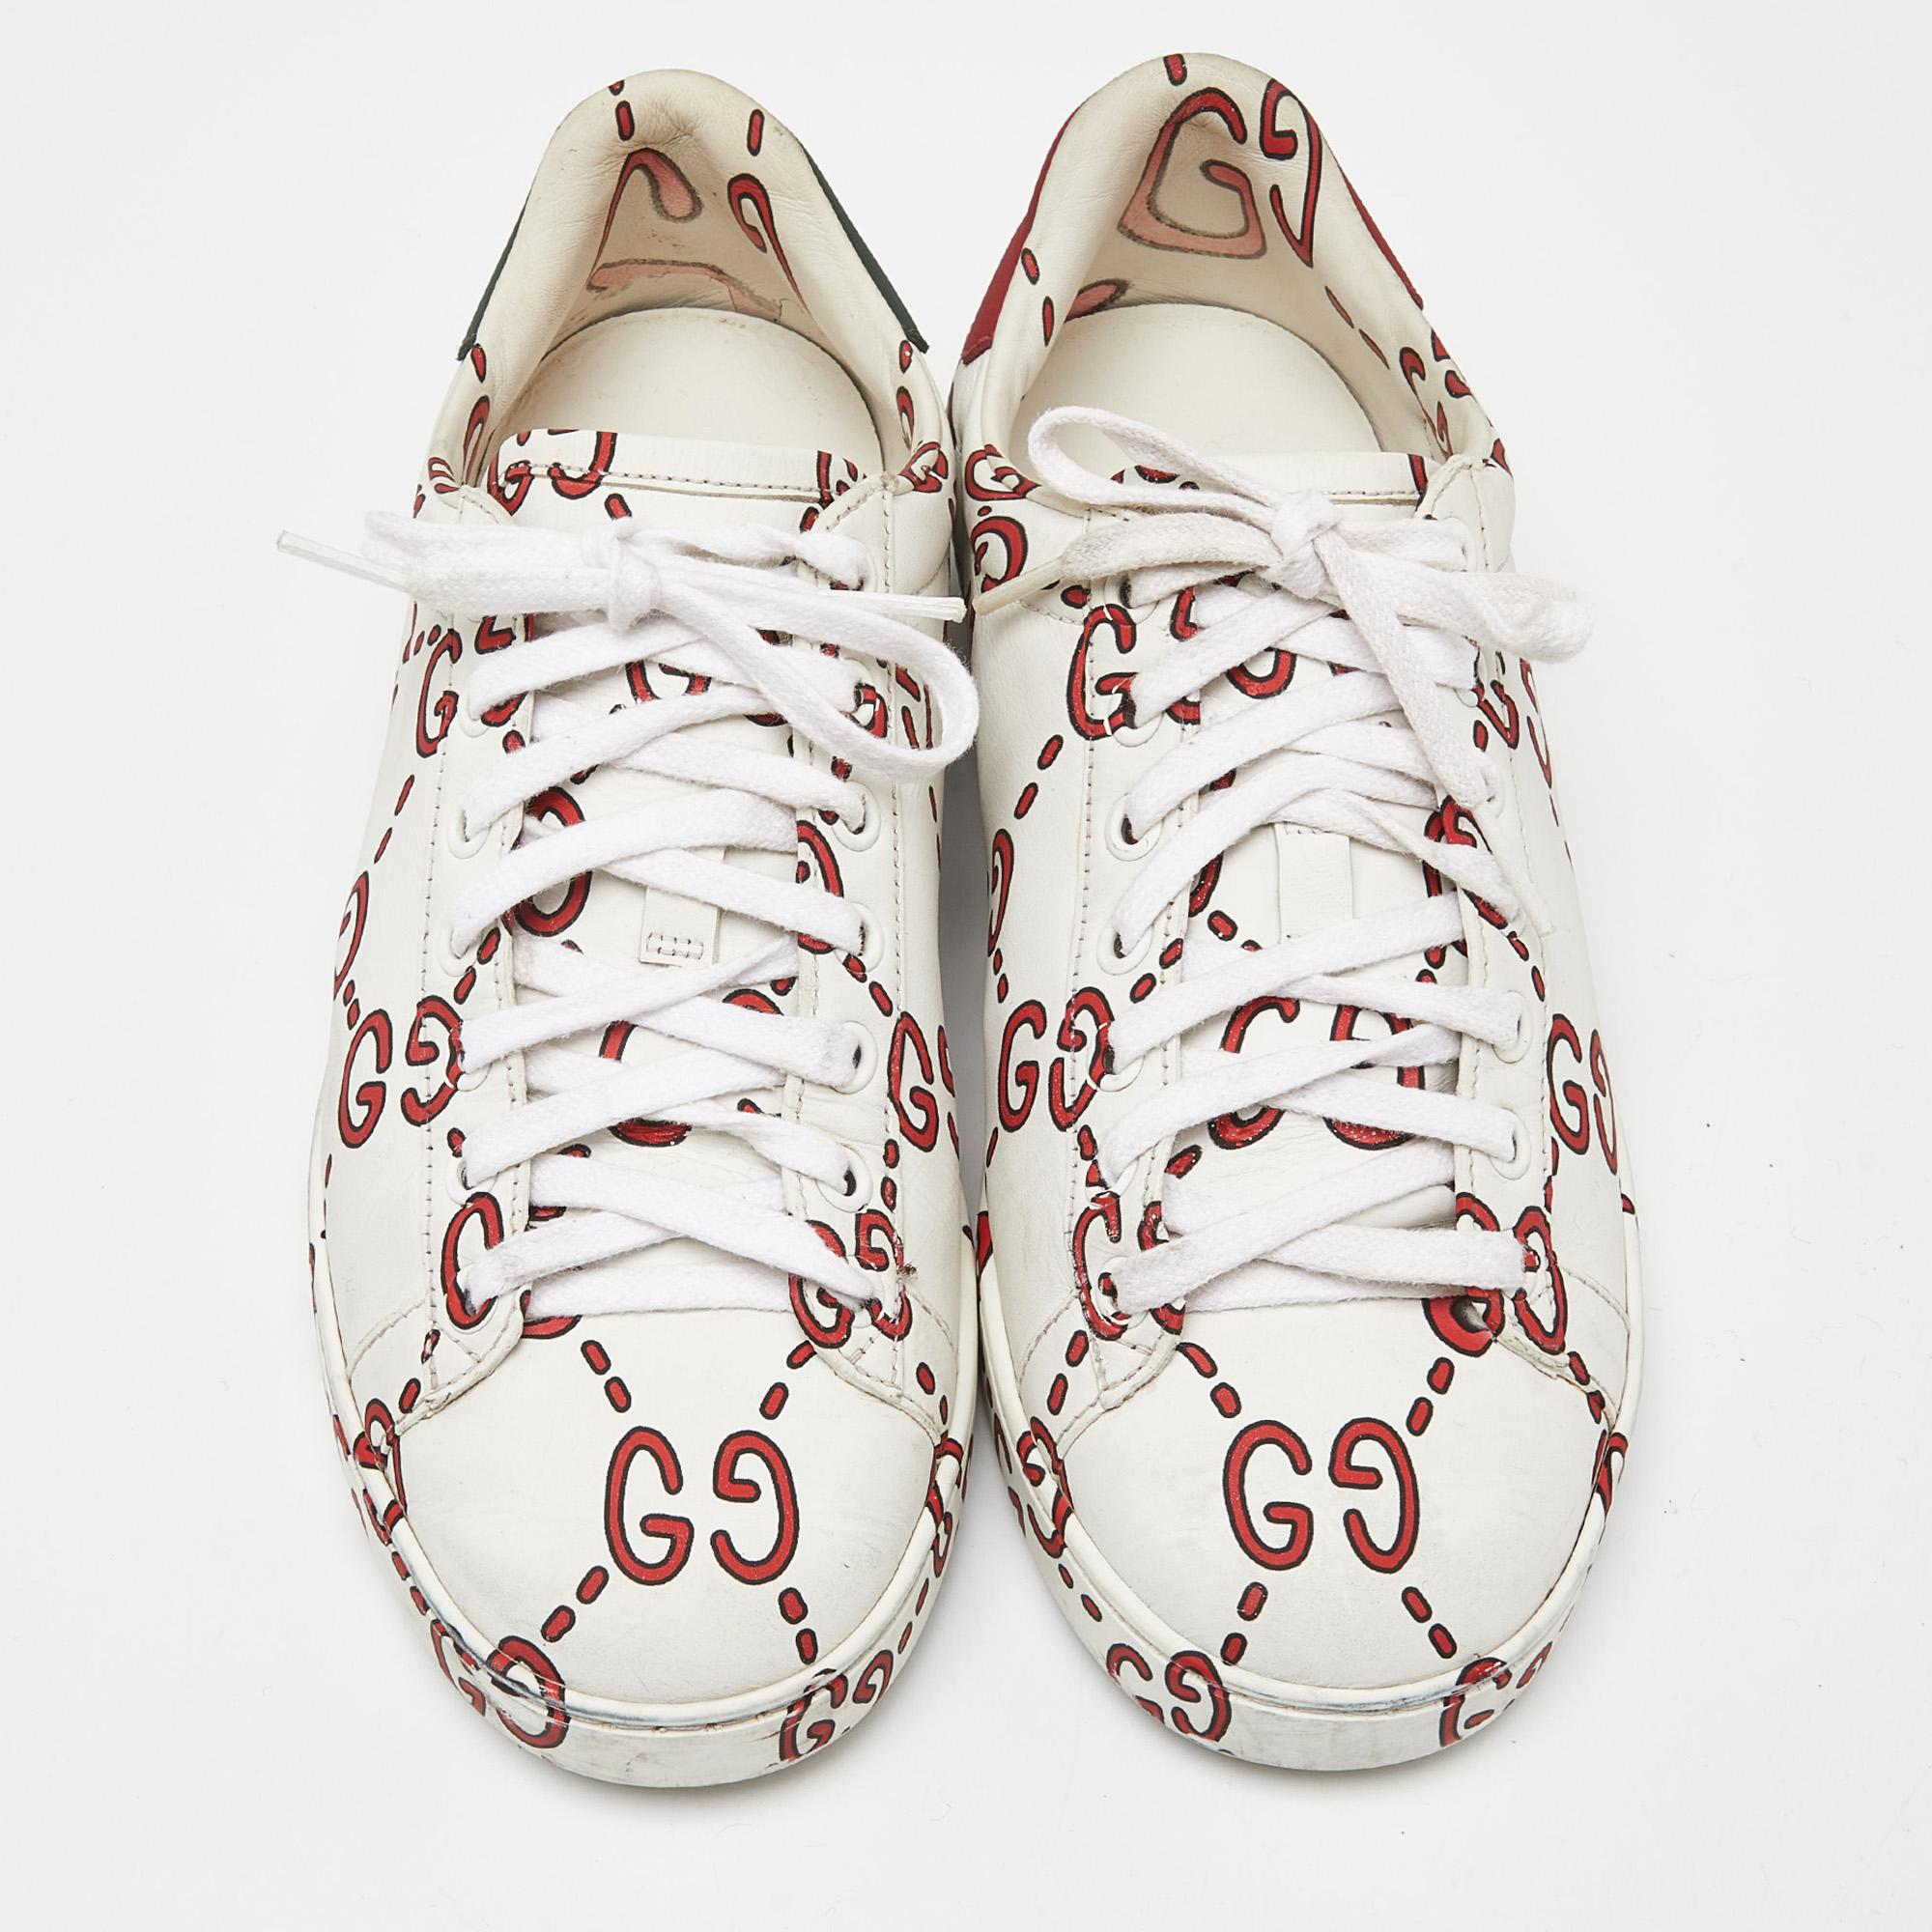 Voici les baskets Gucci Ghost GG Ace, une fusion de style contemporain et d'artisanat intemporel. Confectionnées en cuir de première qualité, ces baskets arborent un élégant design tricolore avec le motif GG emblématique. D'une coupe confortable et